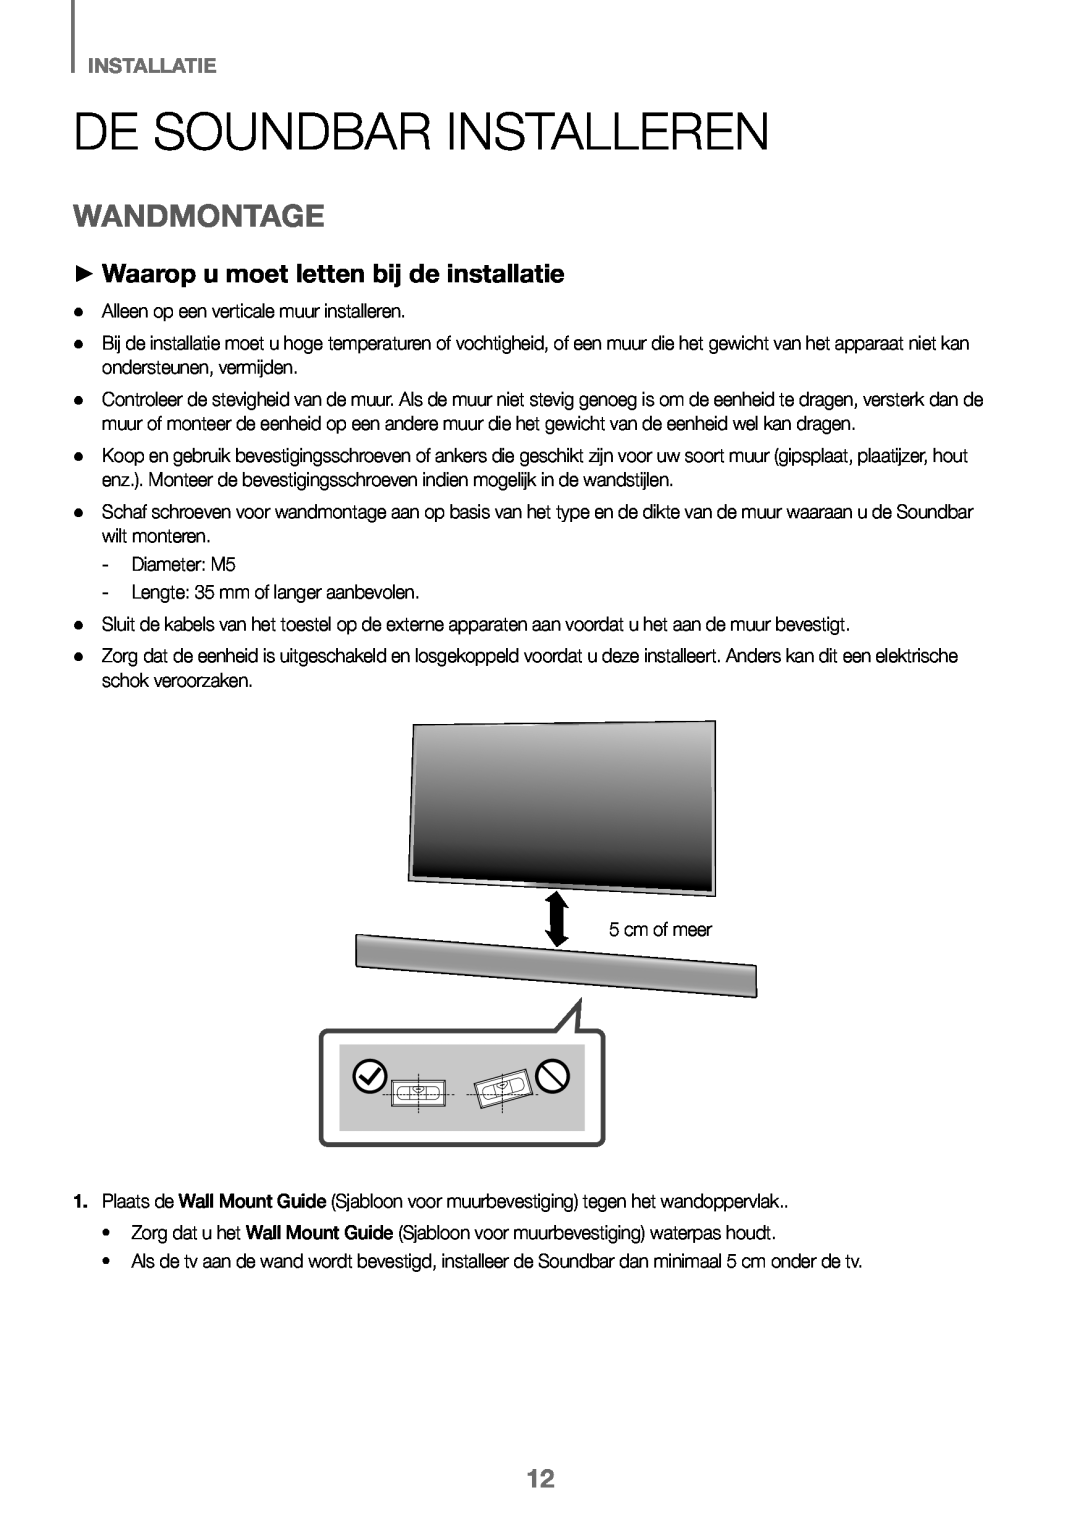 Samsung HW-J450/EN manual De Soundbar Installeren, Wandmontage, ++Waarop u moet letten bij de installatie, Installatie 